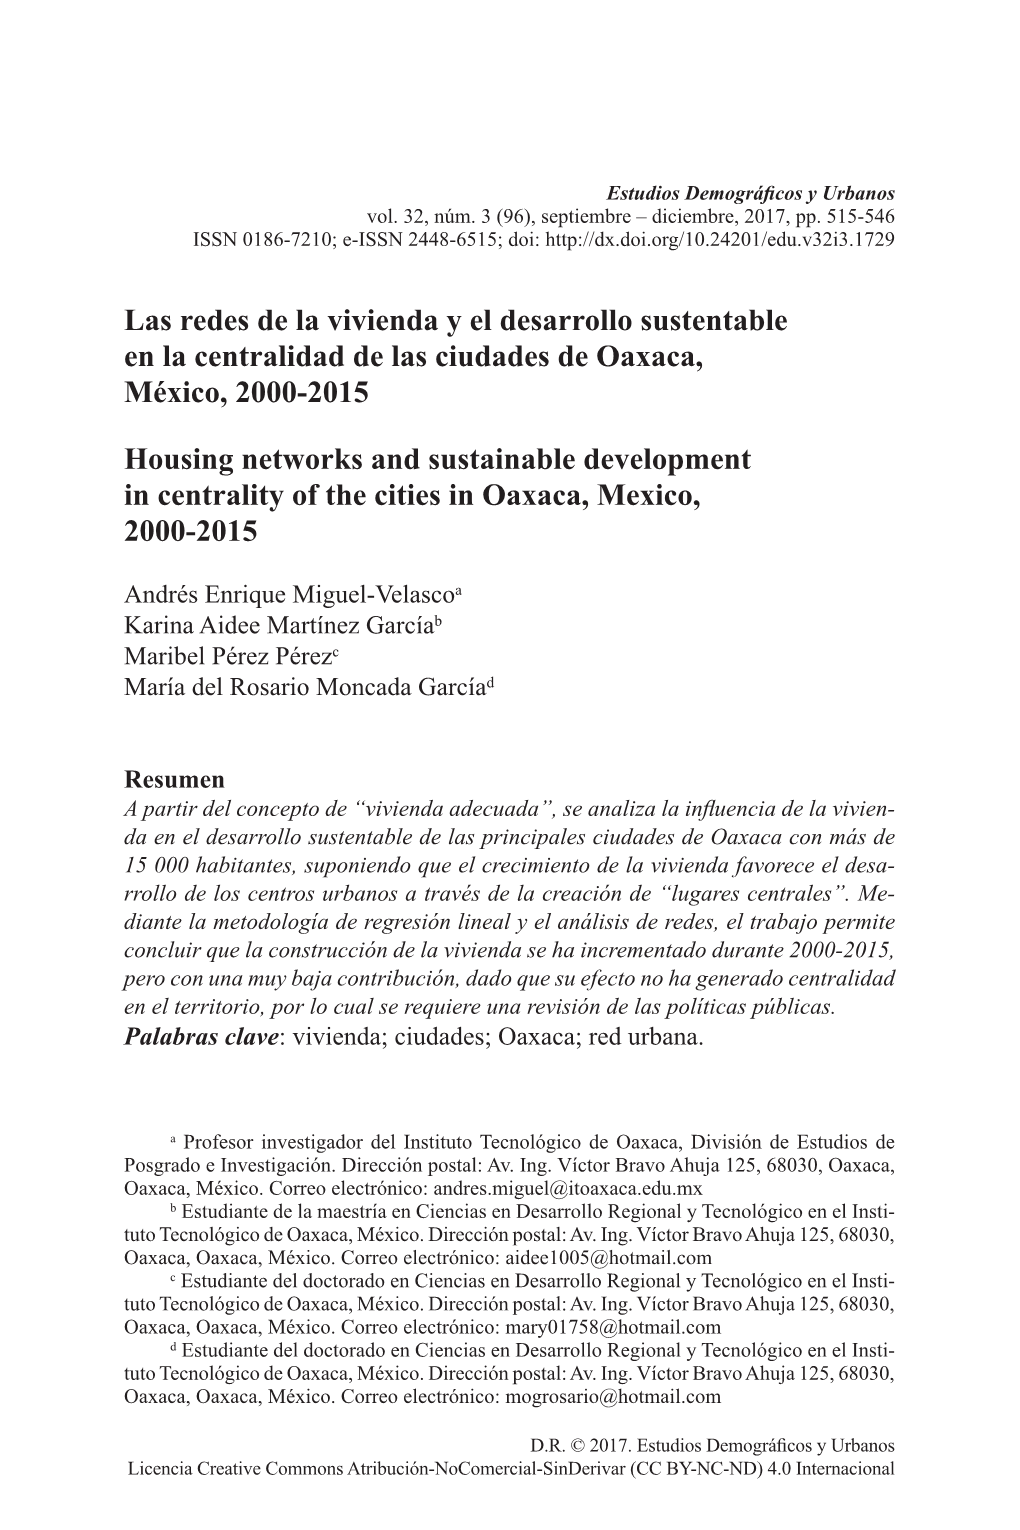 Las Redes De La Vivienda Y El Desarrollo Sustentable En La Centralidad De Las Ciudades De Oaxaca, México, 2000-2015